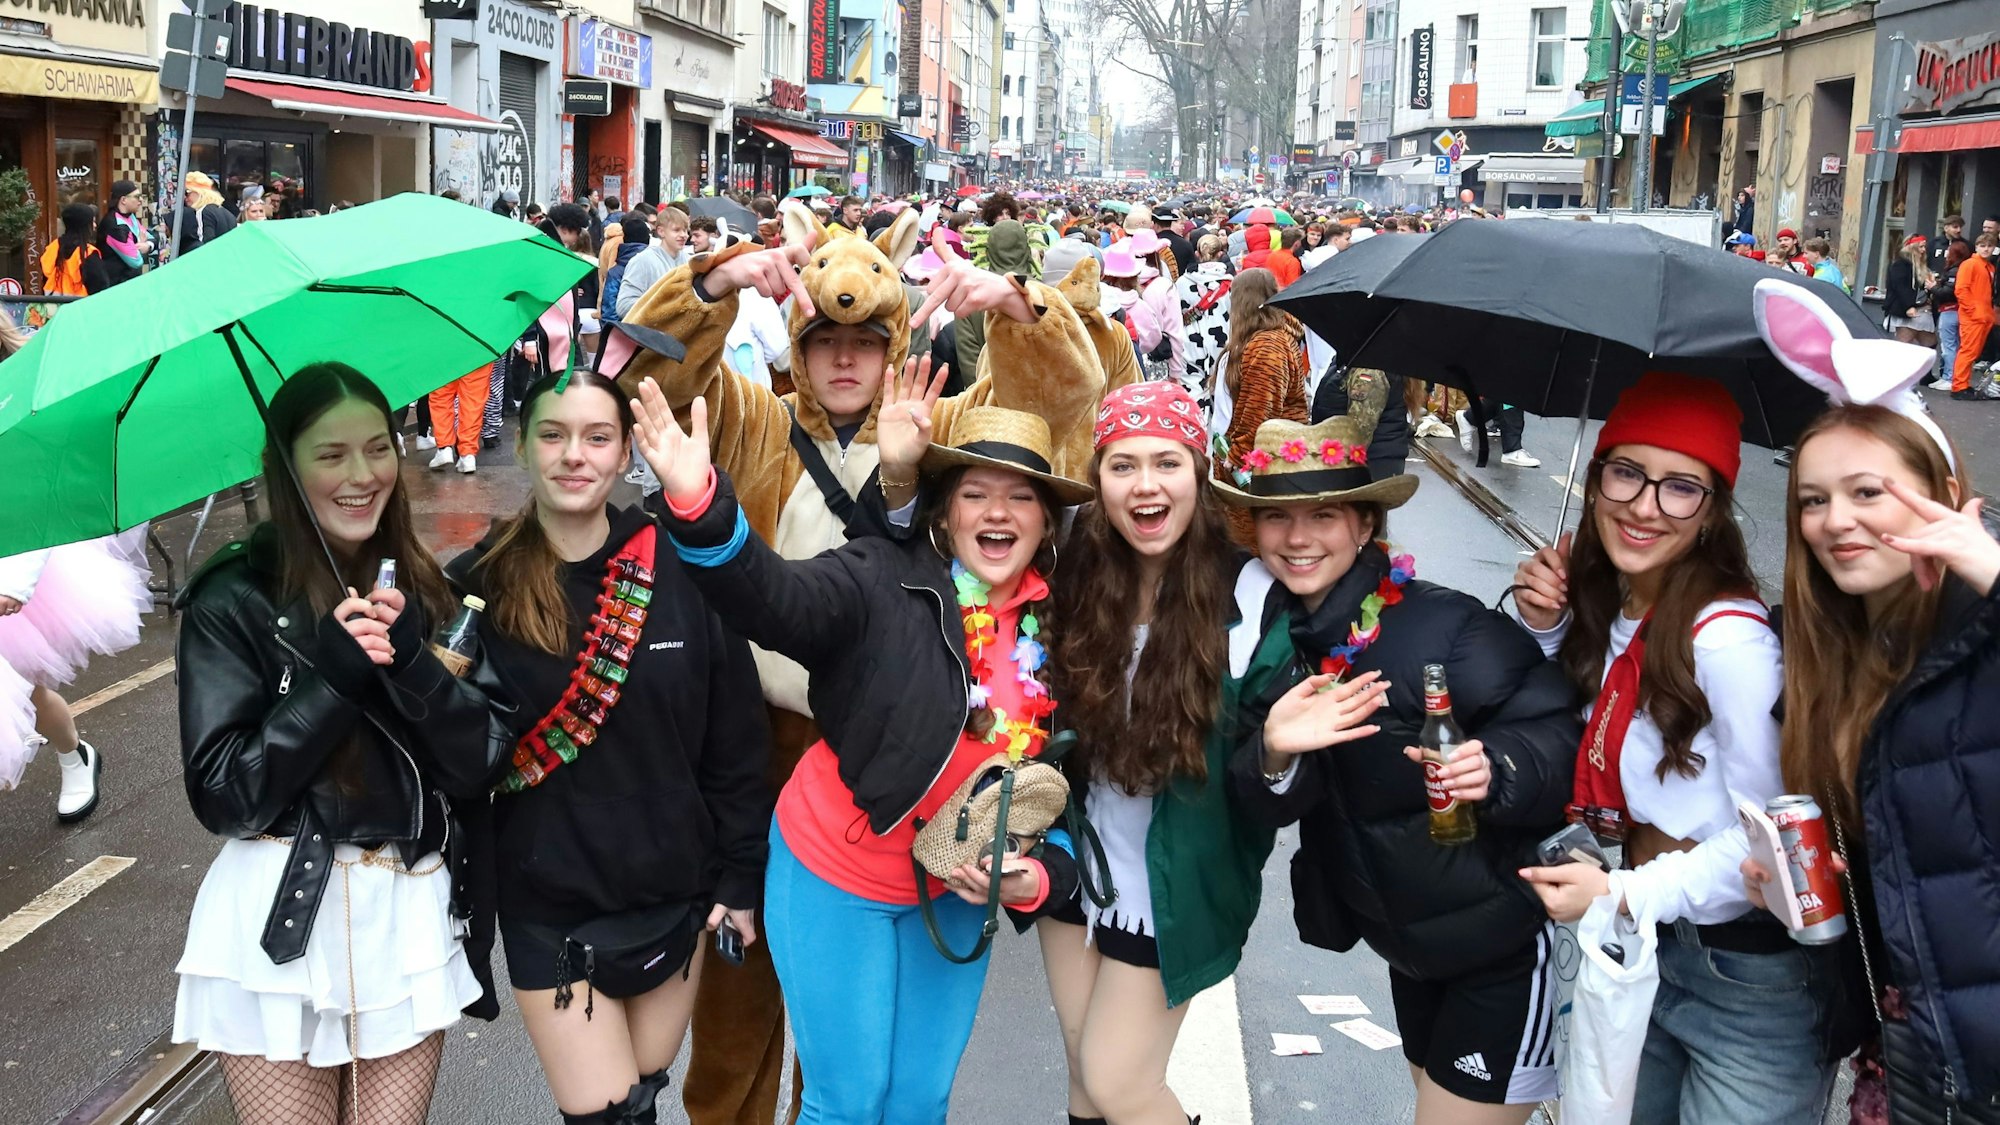 Diese Frauen haben trotz Regenwetter ihre Freude im Zülpicher Viertel. Immerhin: Es gibt deutlich mehr Platz auf der Straße um zu Feiern.